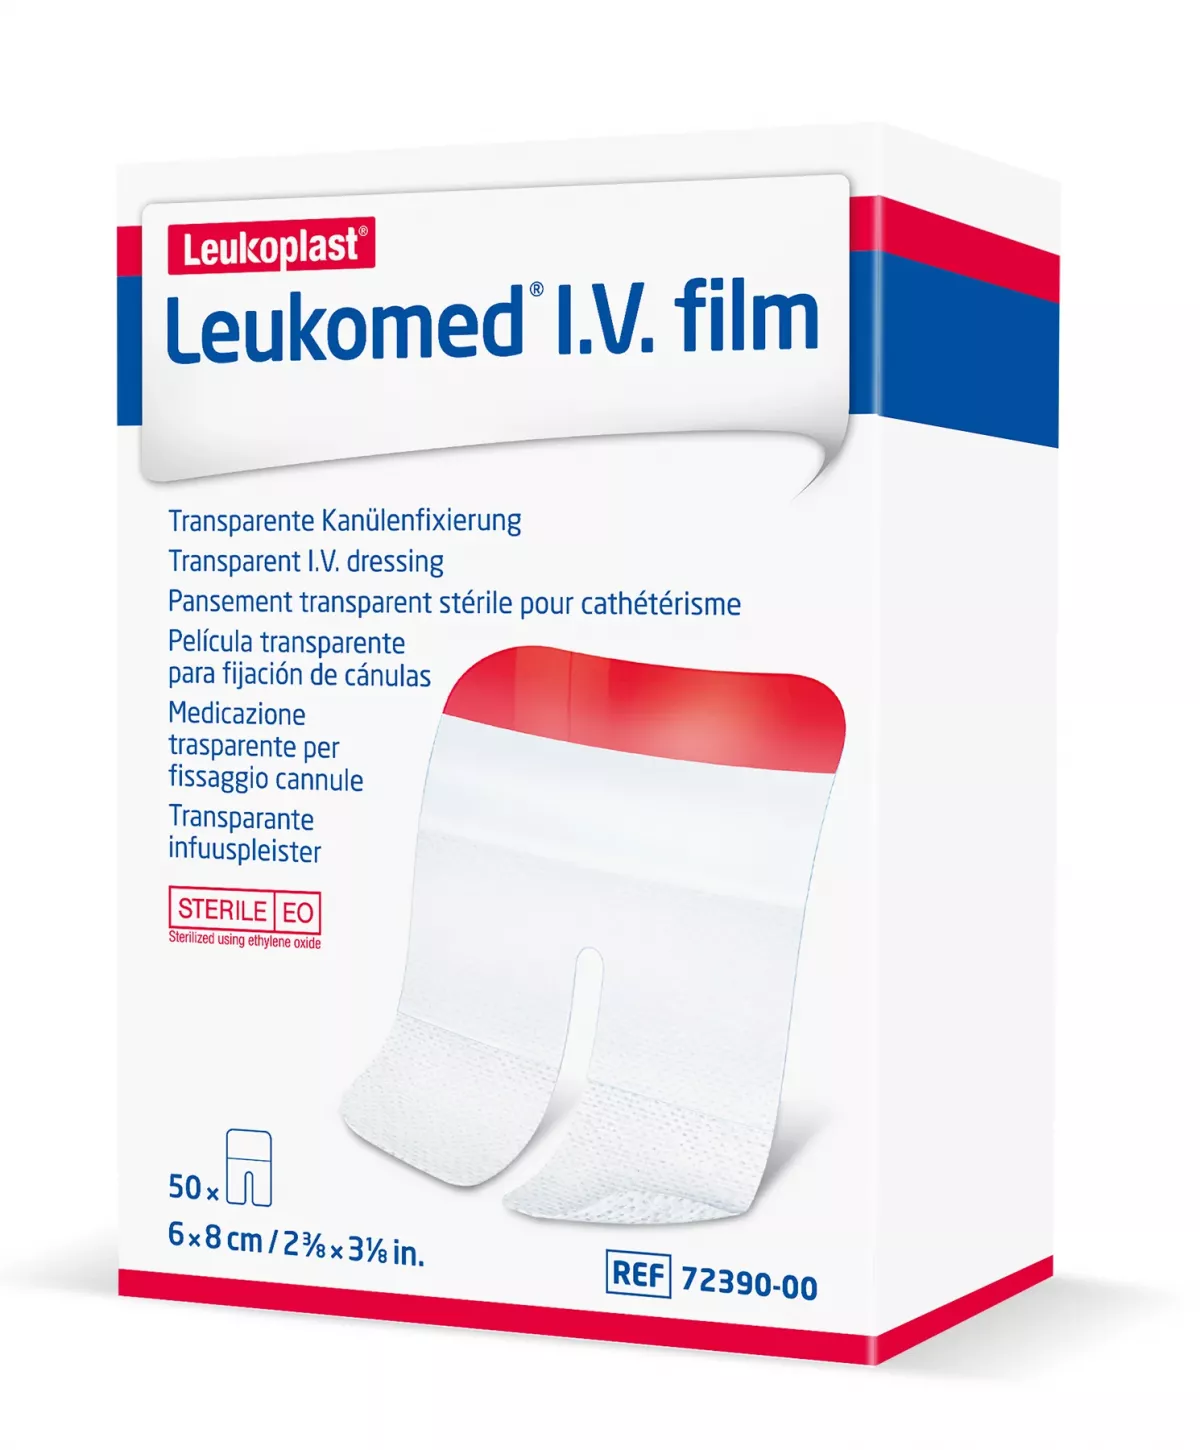 Plasturi transparenti fixare branula Leukomed IV film, cutie 50buc, 6cmx8cm